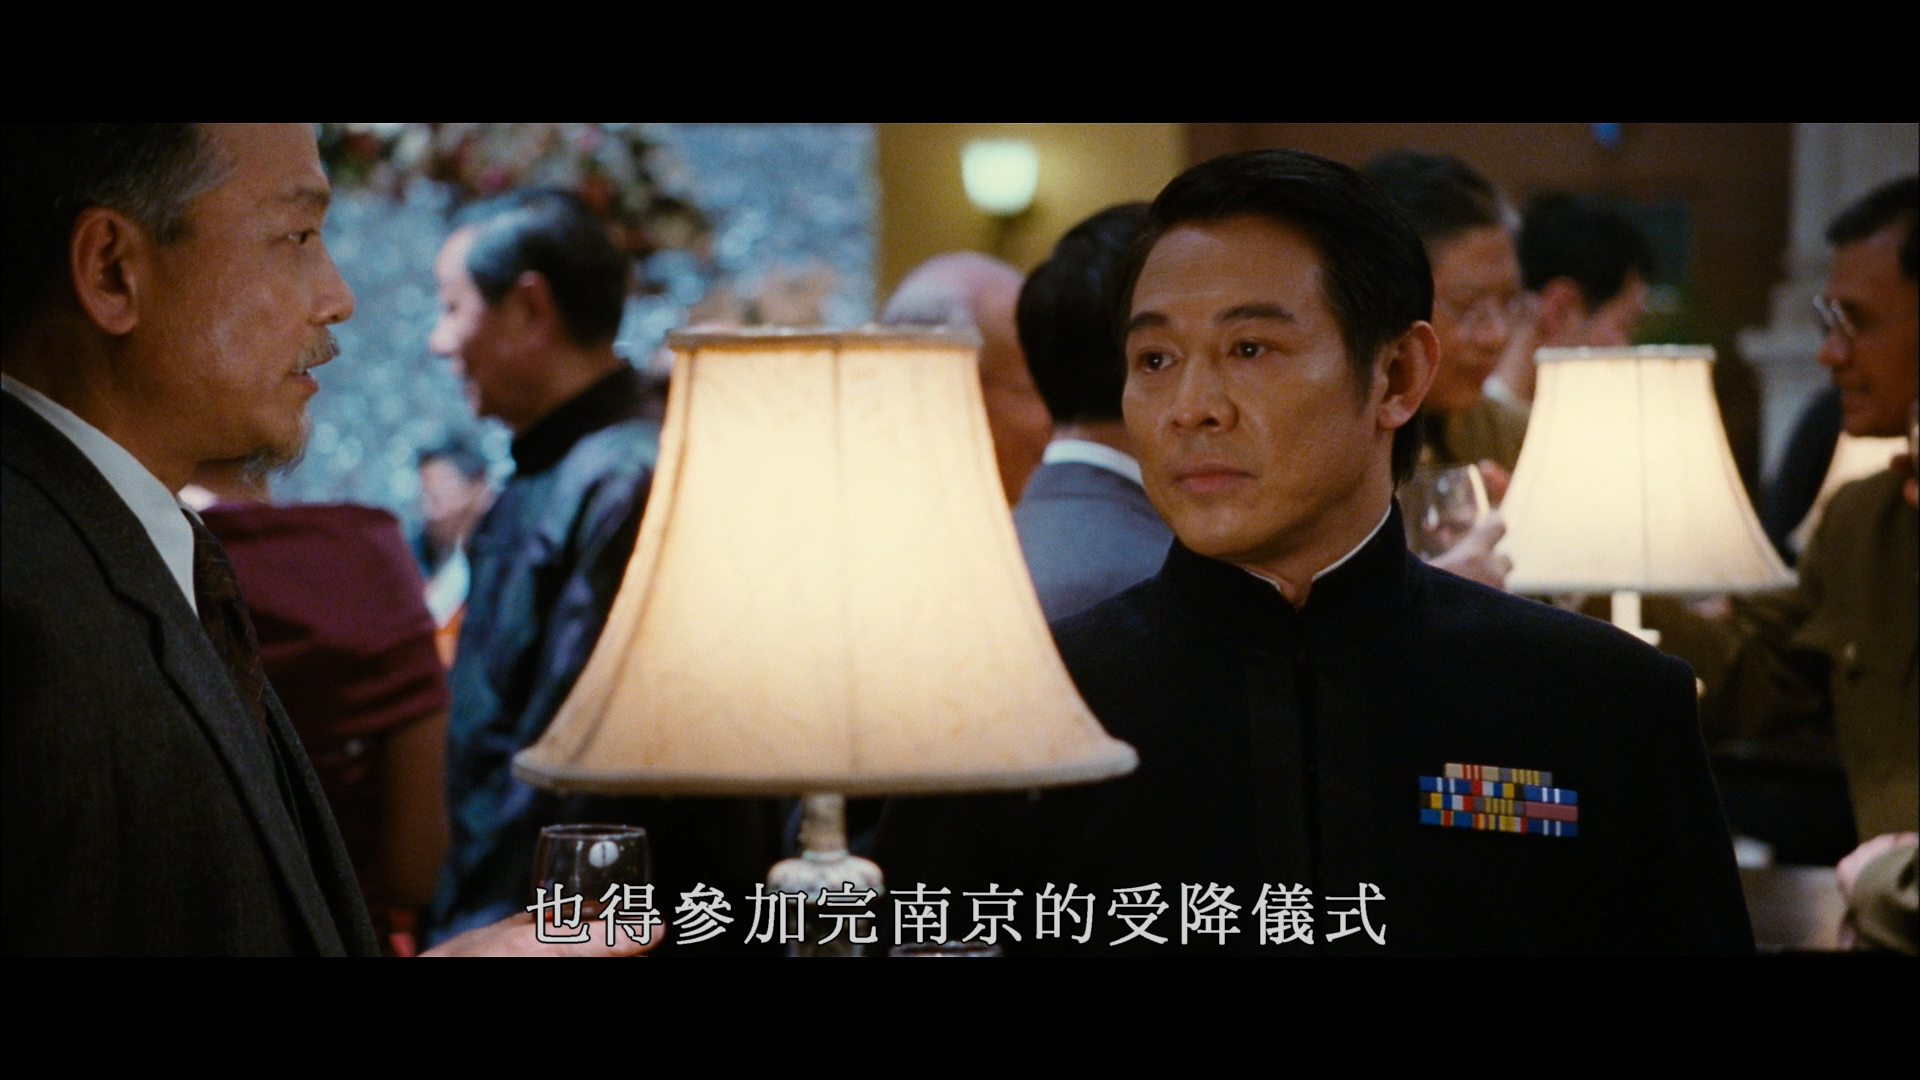 建国大业 [自购港版高码原盘] [国粤双语] [简繁英字幕] The Founding of a Republic 2009 HKG Blu-ray 1080P AVC DTS-HD MA 7.1-doraemon   [41.66 GB]-3.png